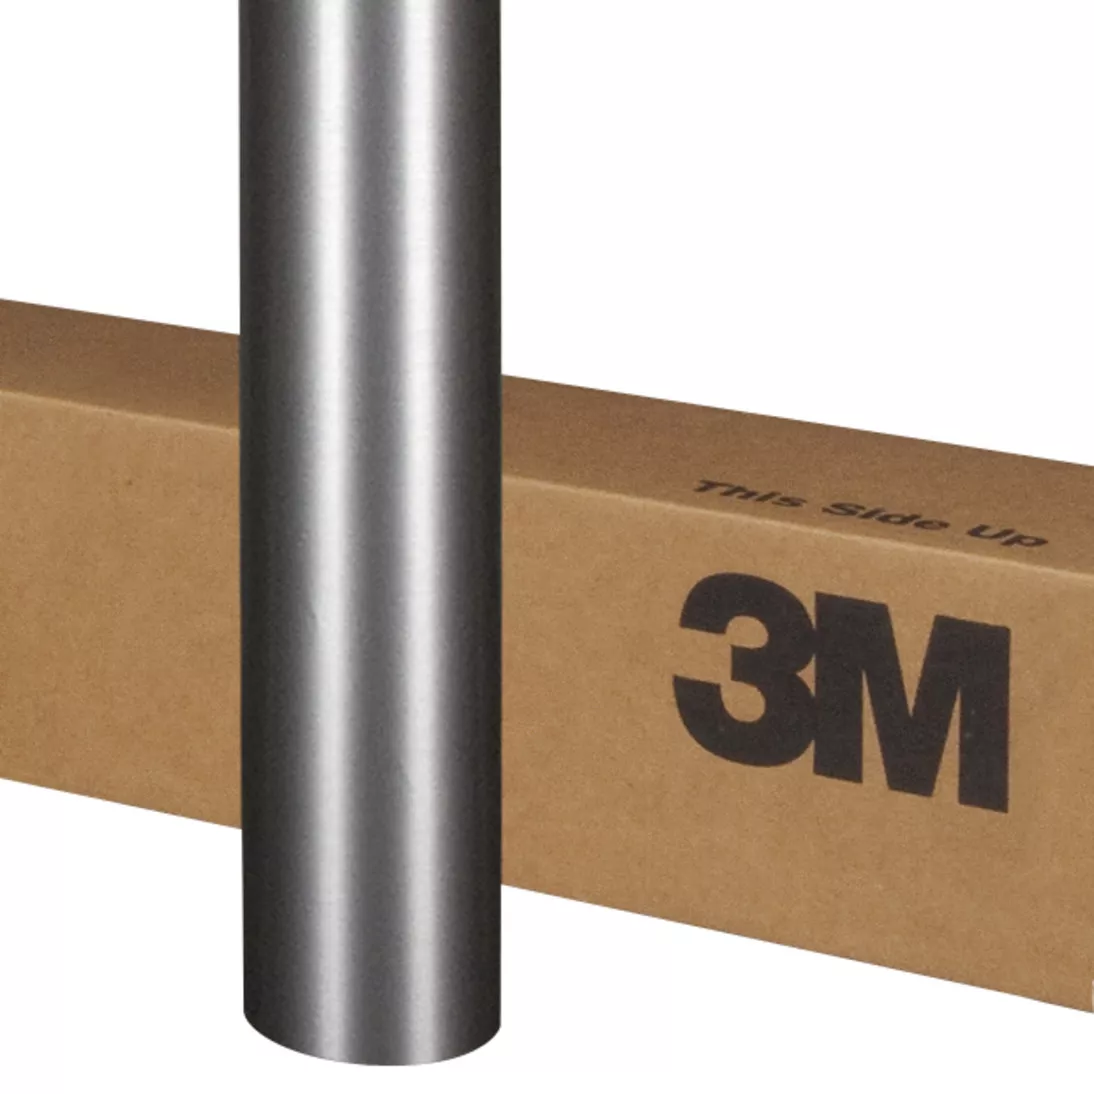 3M™ Wrap Film Series 1080-BR201, Brushed Steel, 60 in x 10 yd